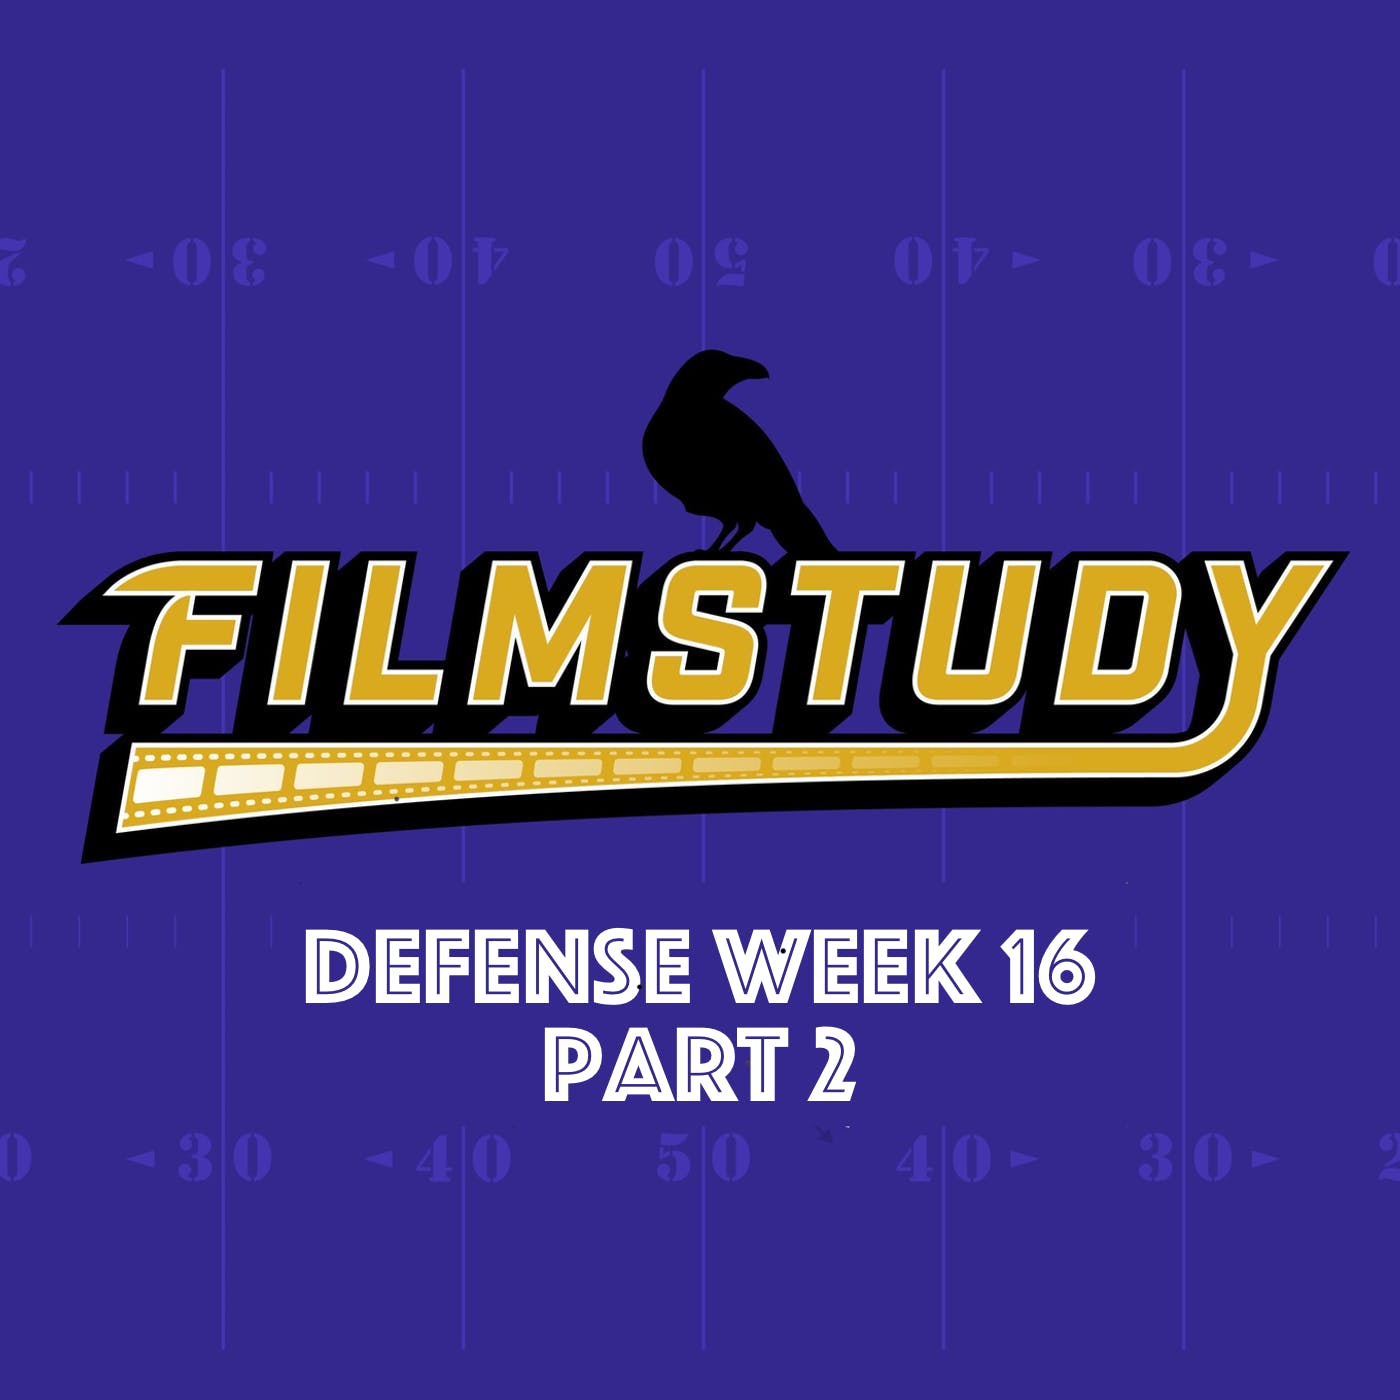 Week 16 Defense Part 2